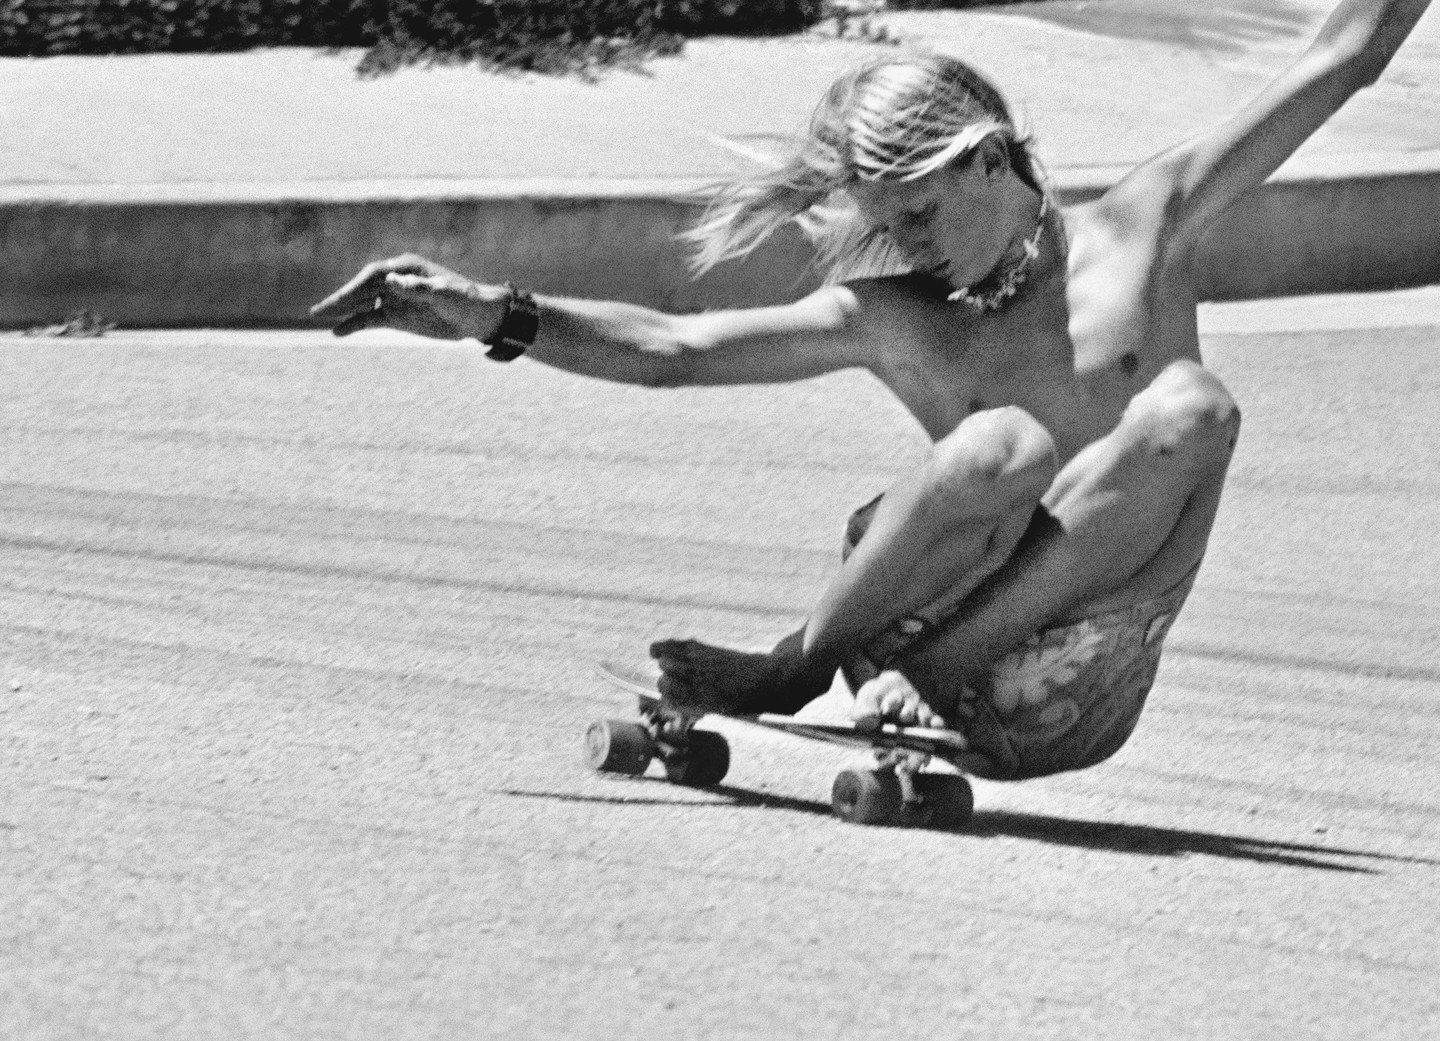 The Dogtown scene: skateboarding in Santa Monica in the late 1970s.